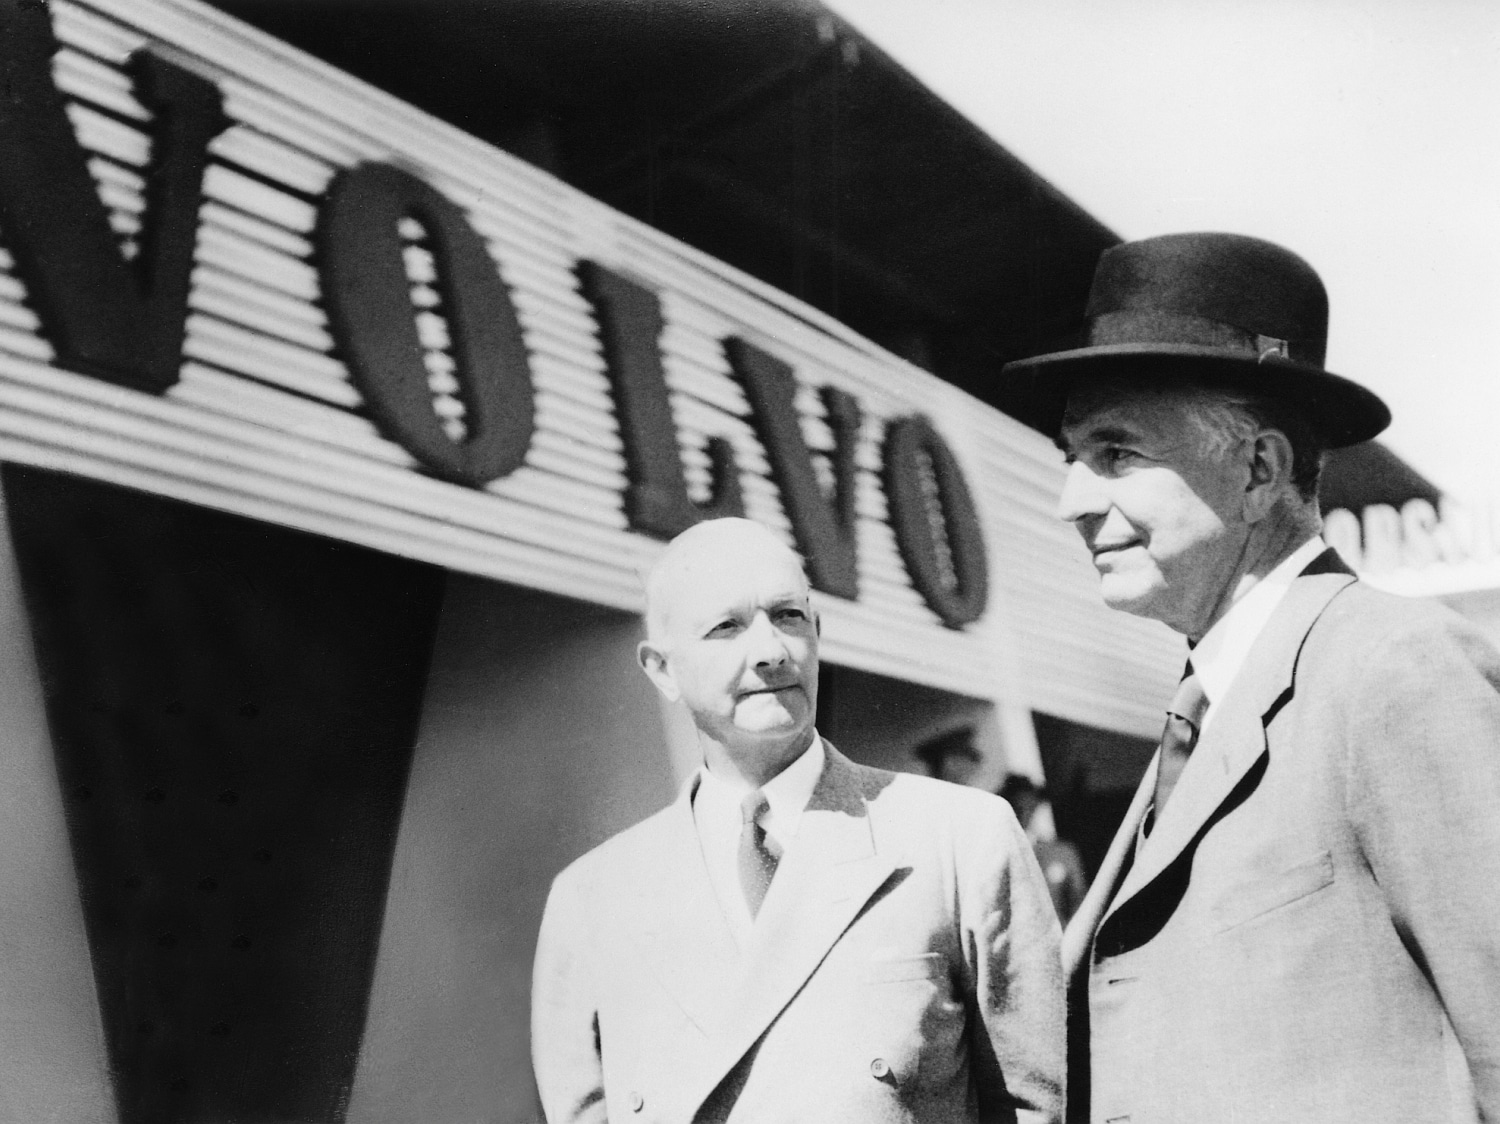 Fotografie de epocă cu doi domni stând lângă un panou publicitar VOLVO.